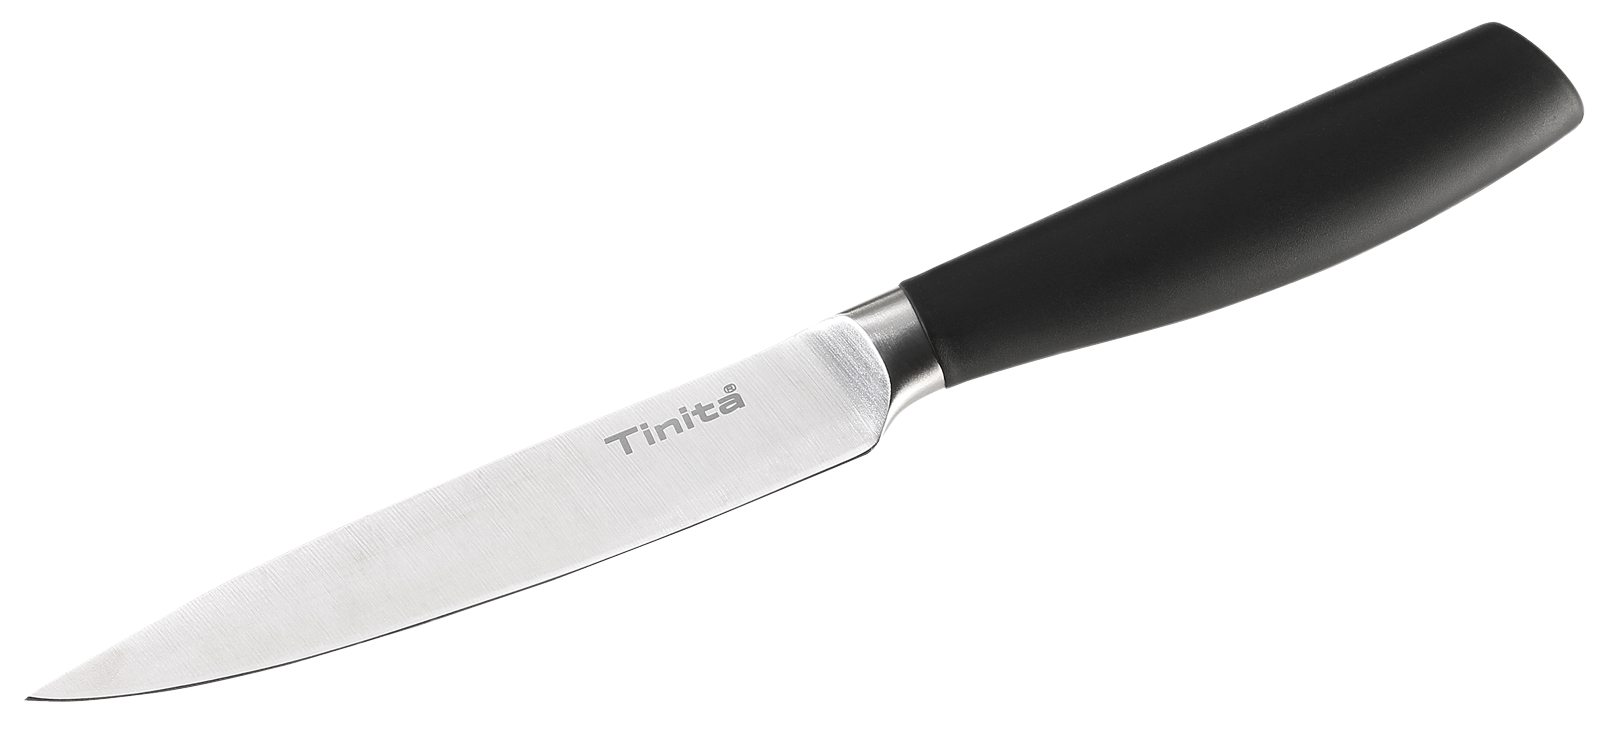 Нож универсальный Tinita маленький в Киеве